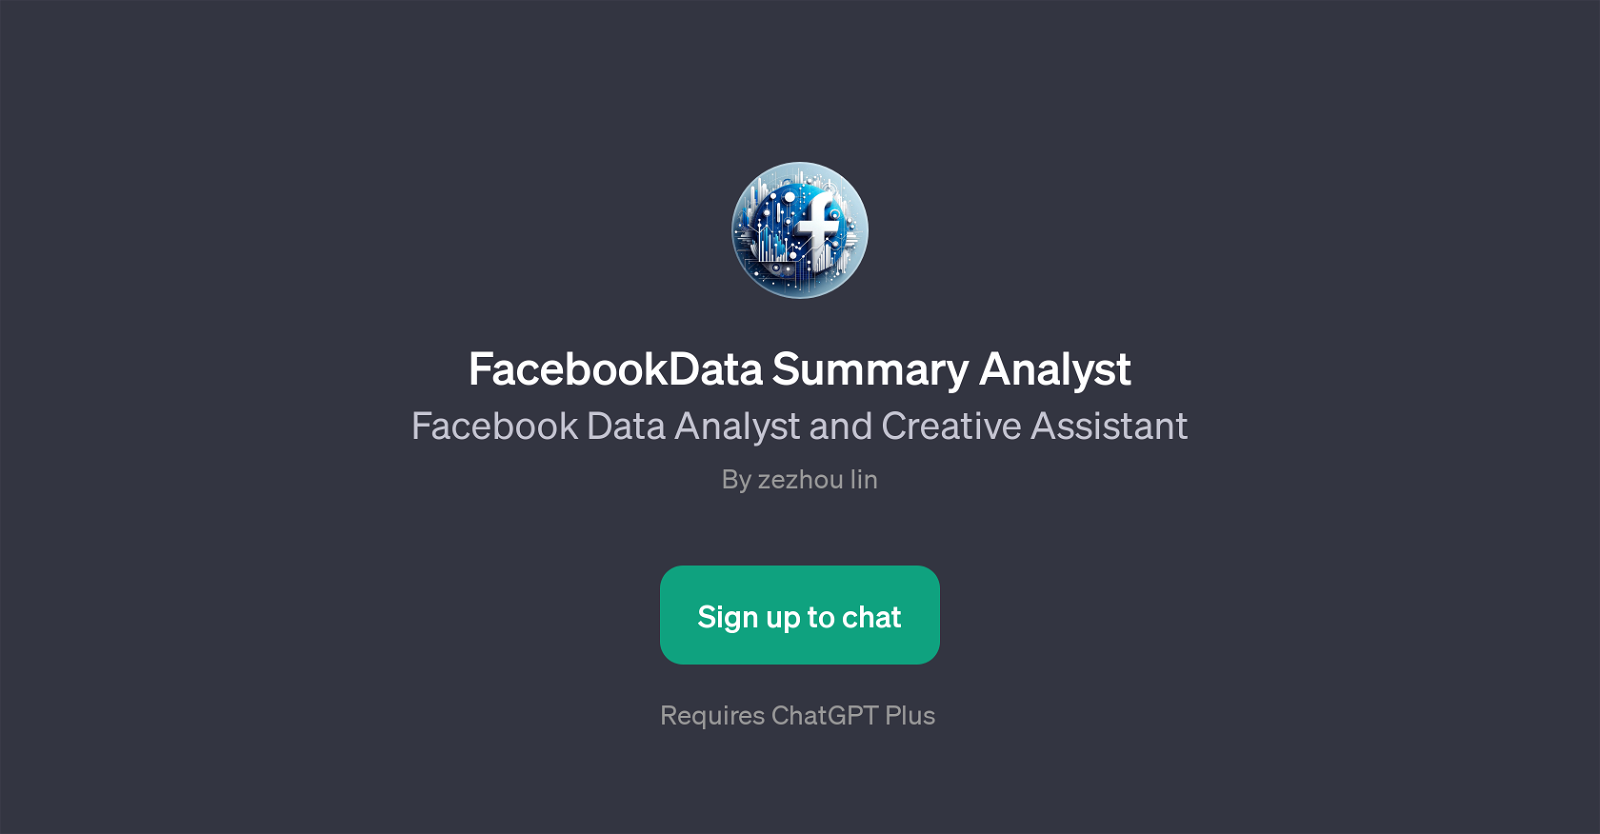 FacebookData Summary Analyst website